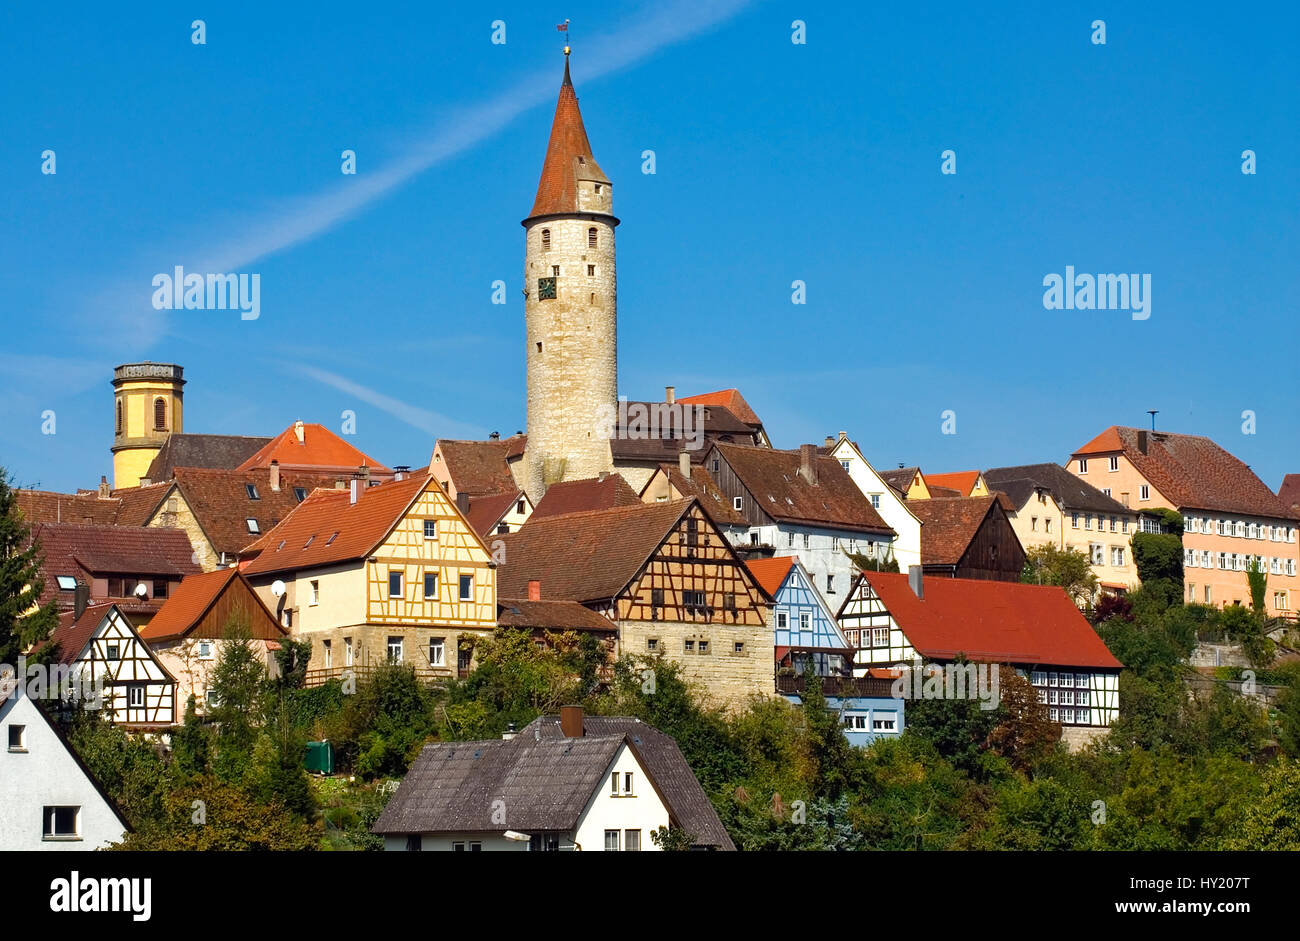 Blick auf die Altstadt von Kirchberg a.d. Jagst , einer mittelalterlichen Stadt im Neckartal, Baden WÃ¼rtemberg, Deutschland.   View  over the medieva Stock Photo